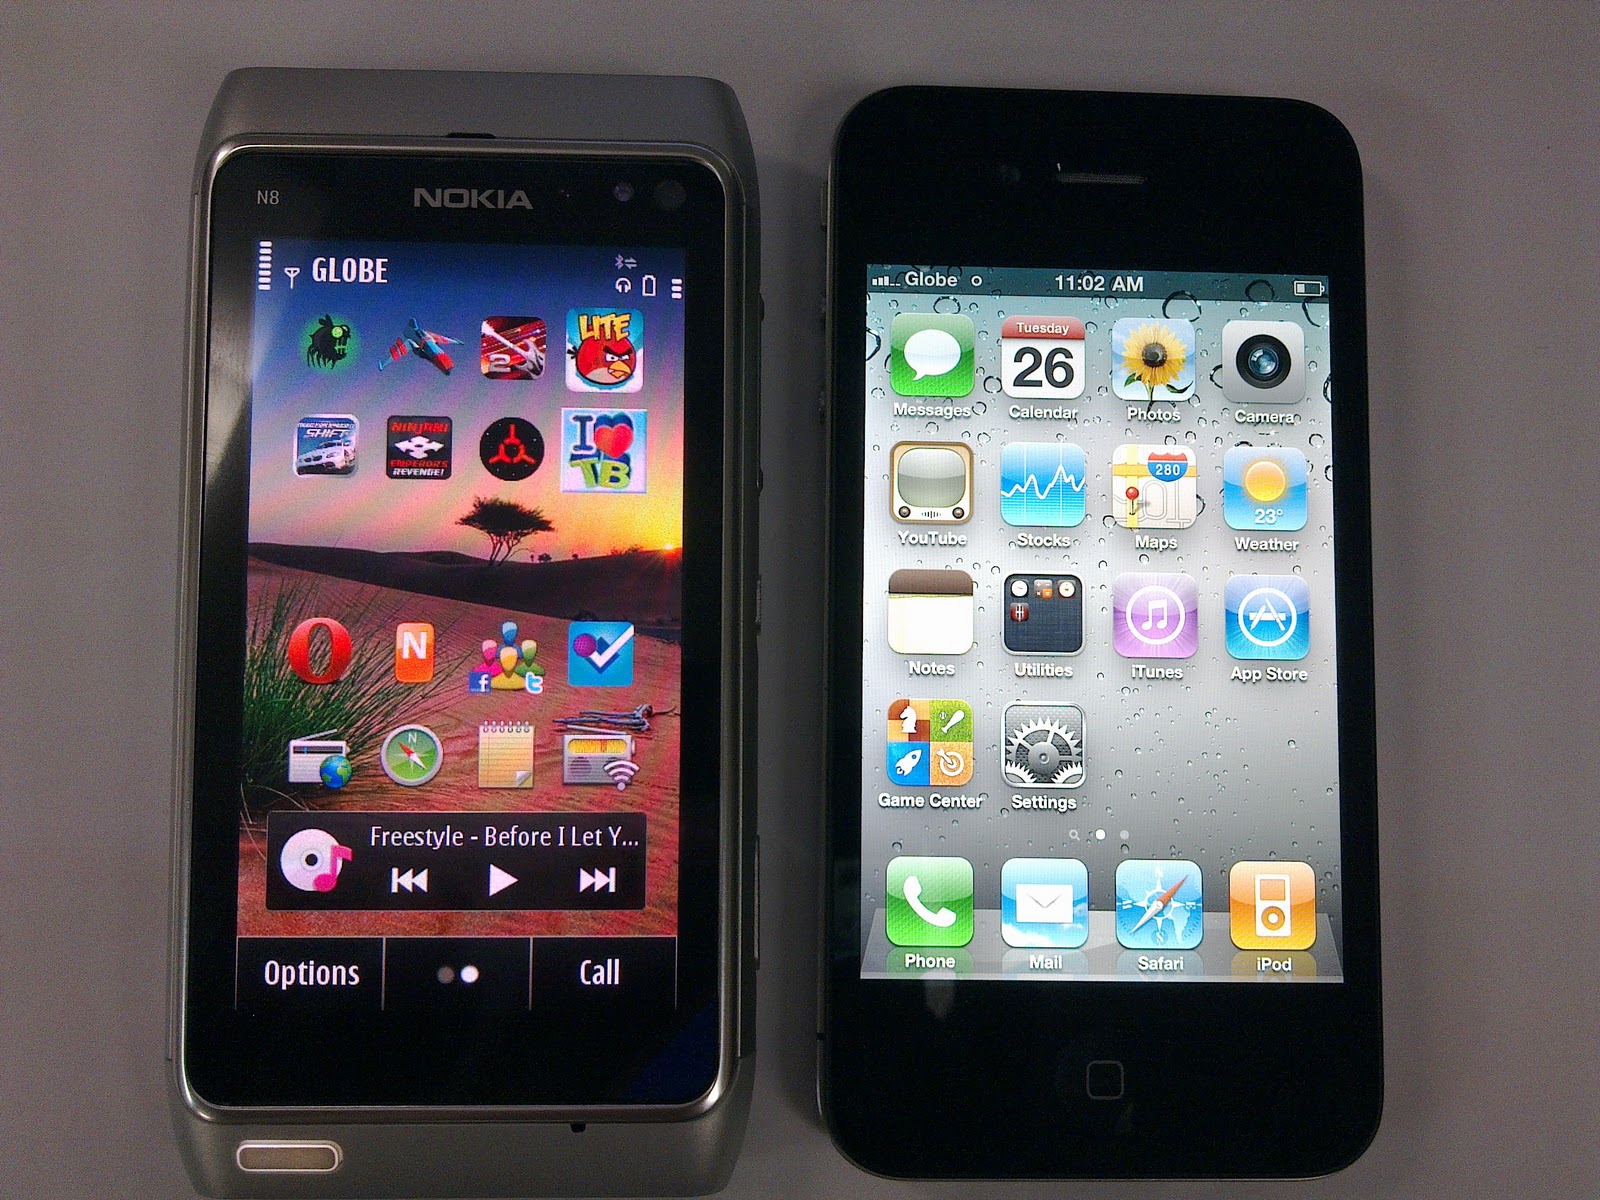 Comparativa entre la cámara del Nokia N8 y la del iphone 4S